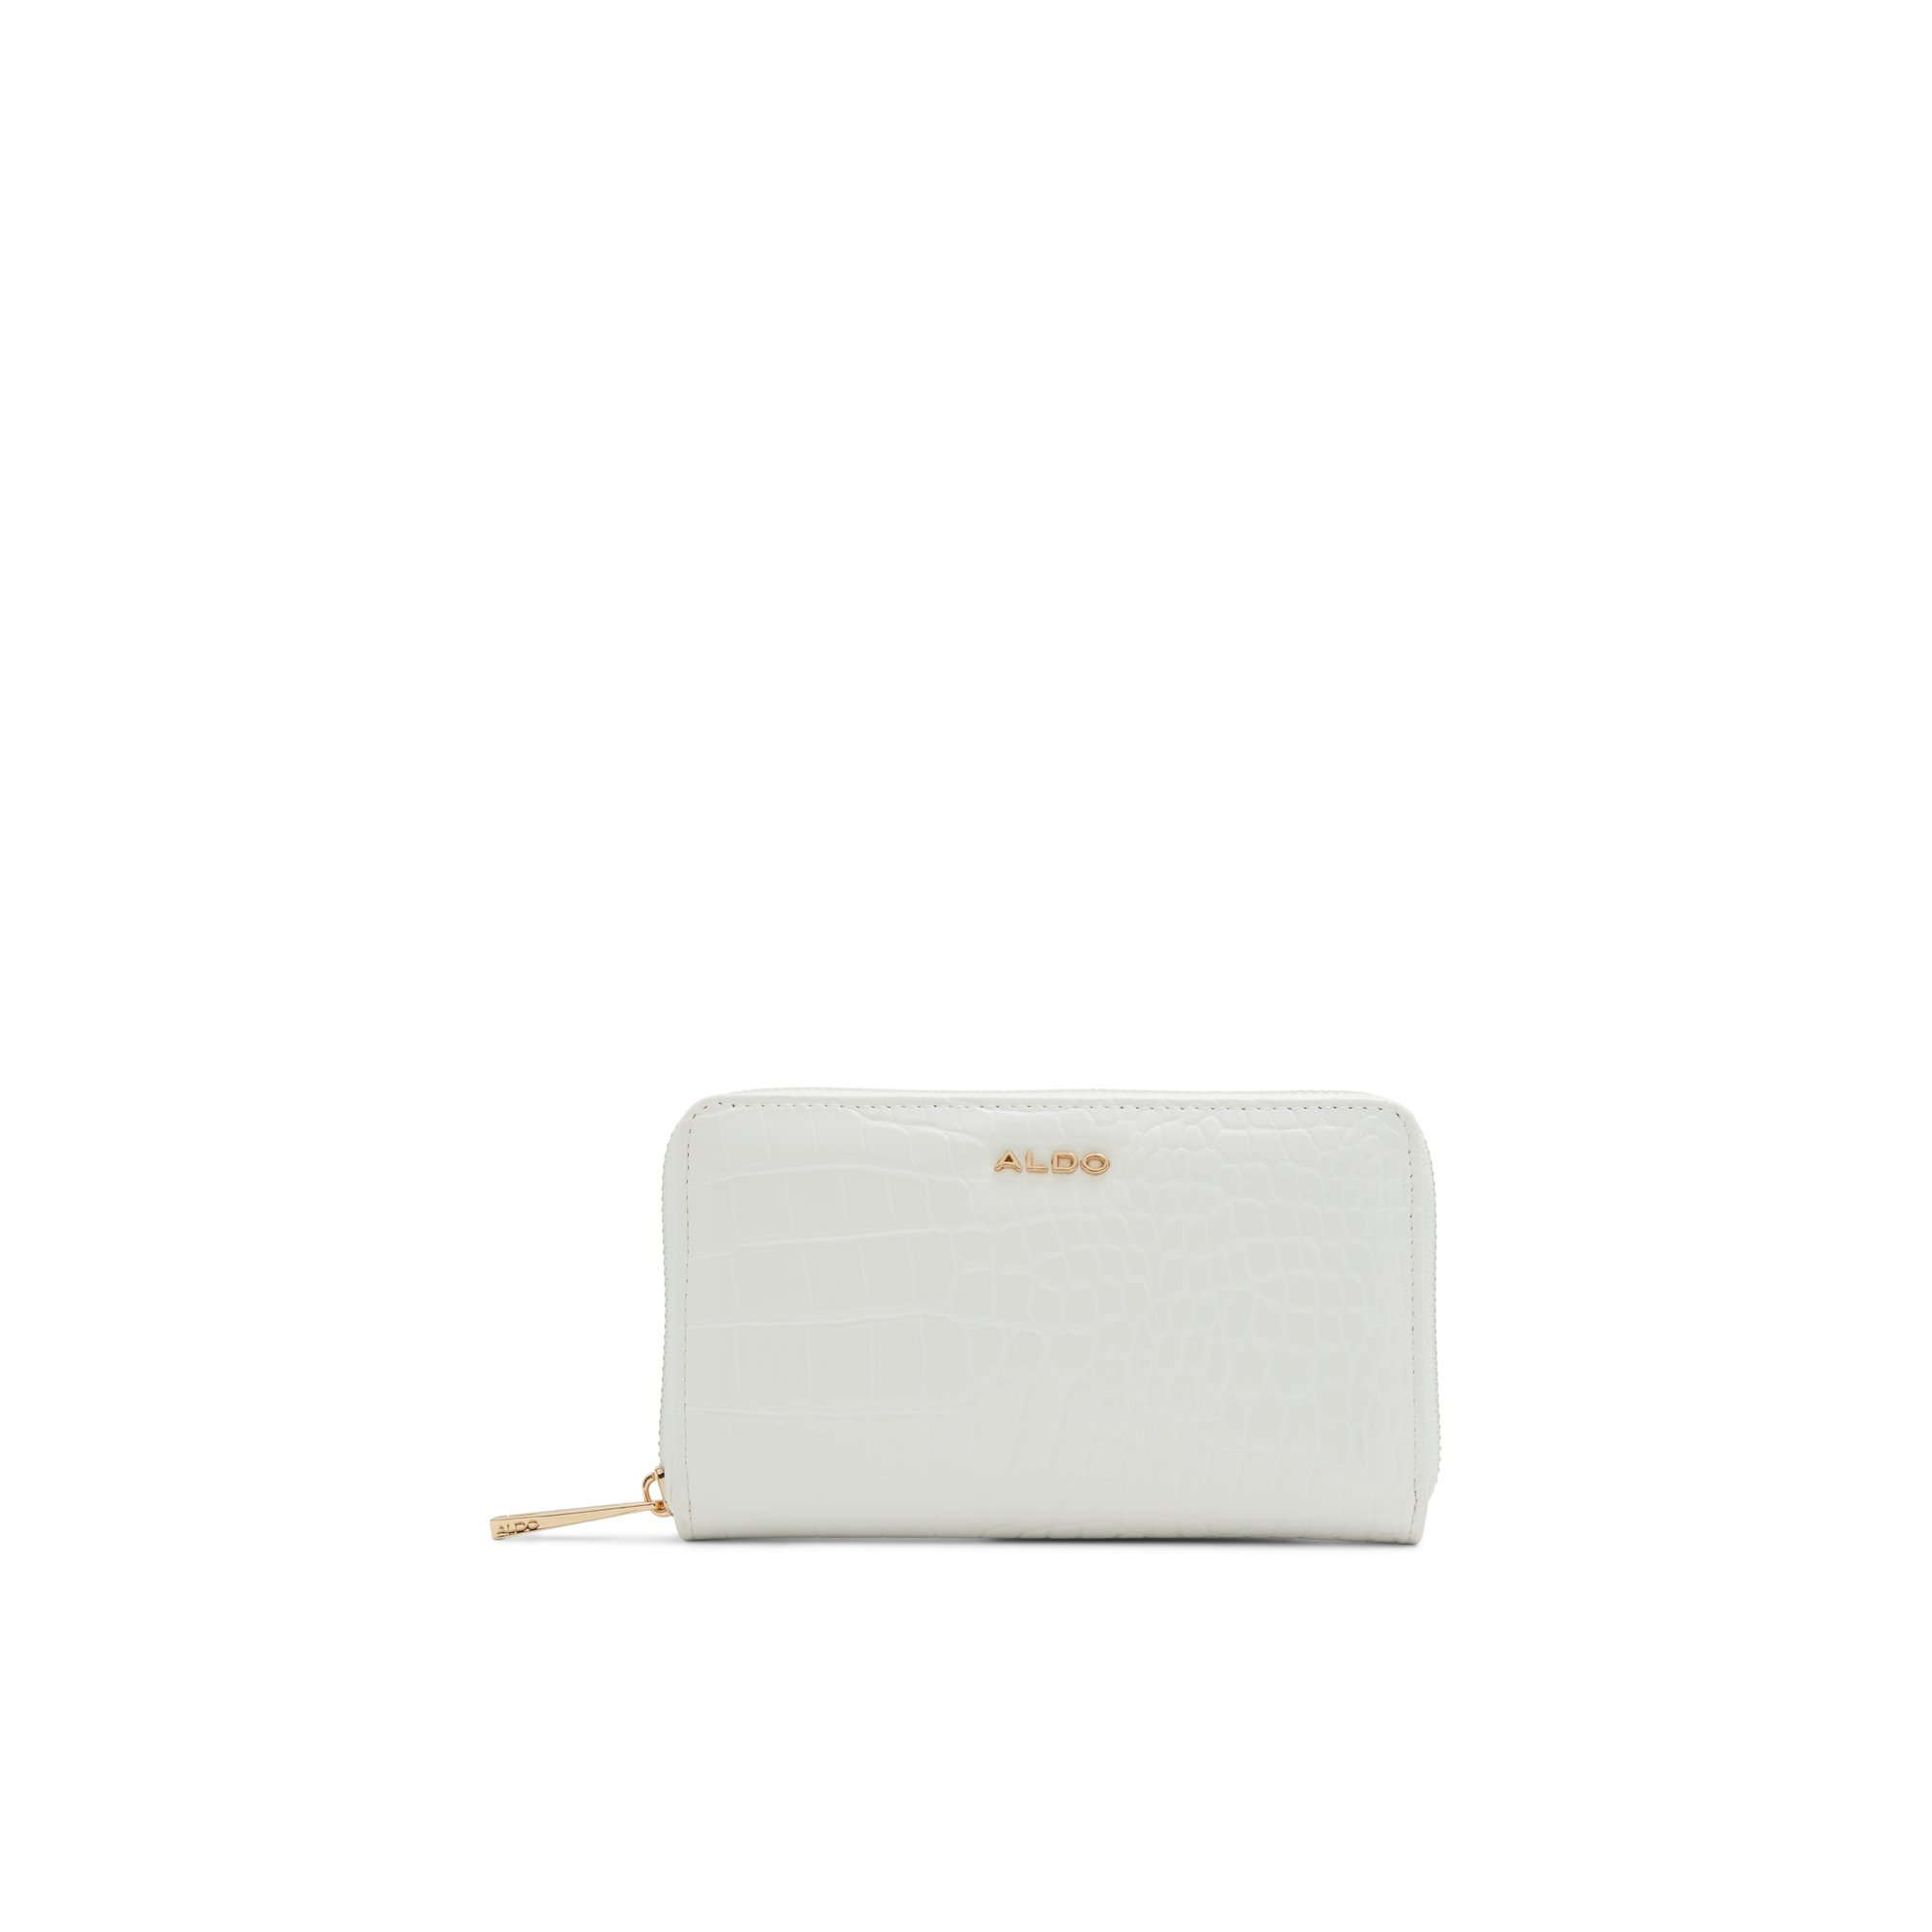 ALDO Kedoe - Women's Wallet Handbag - White